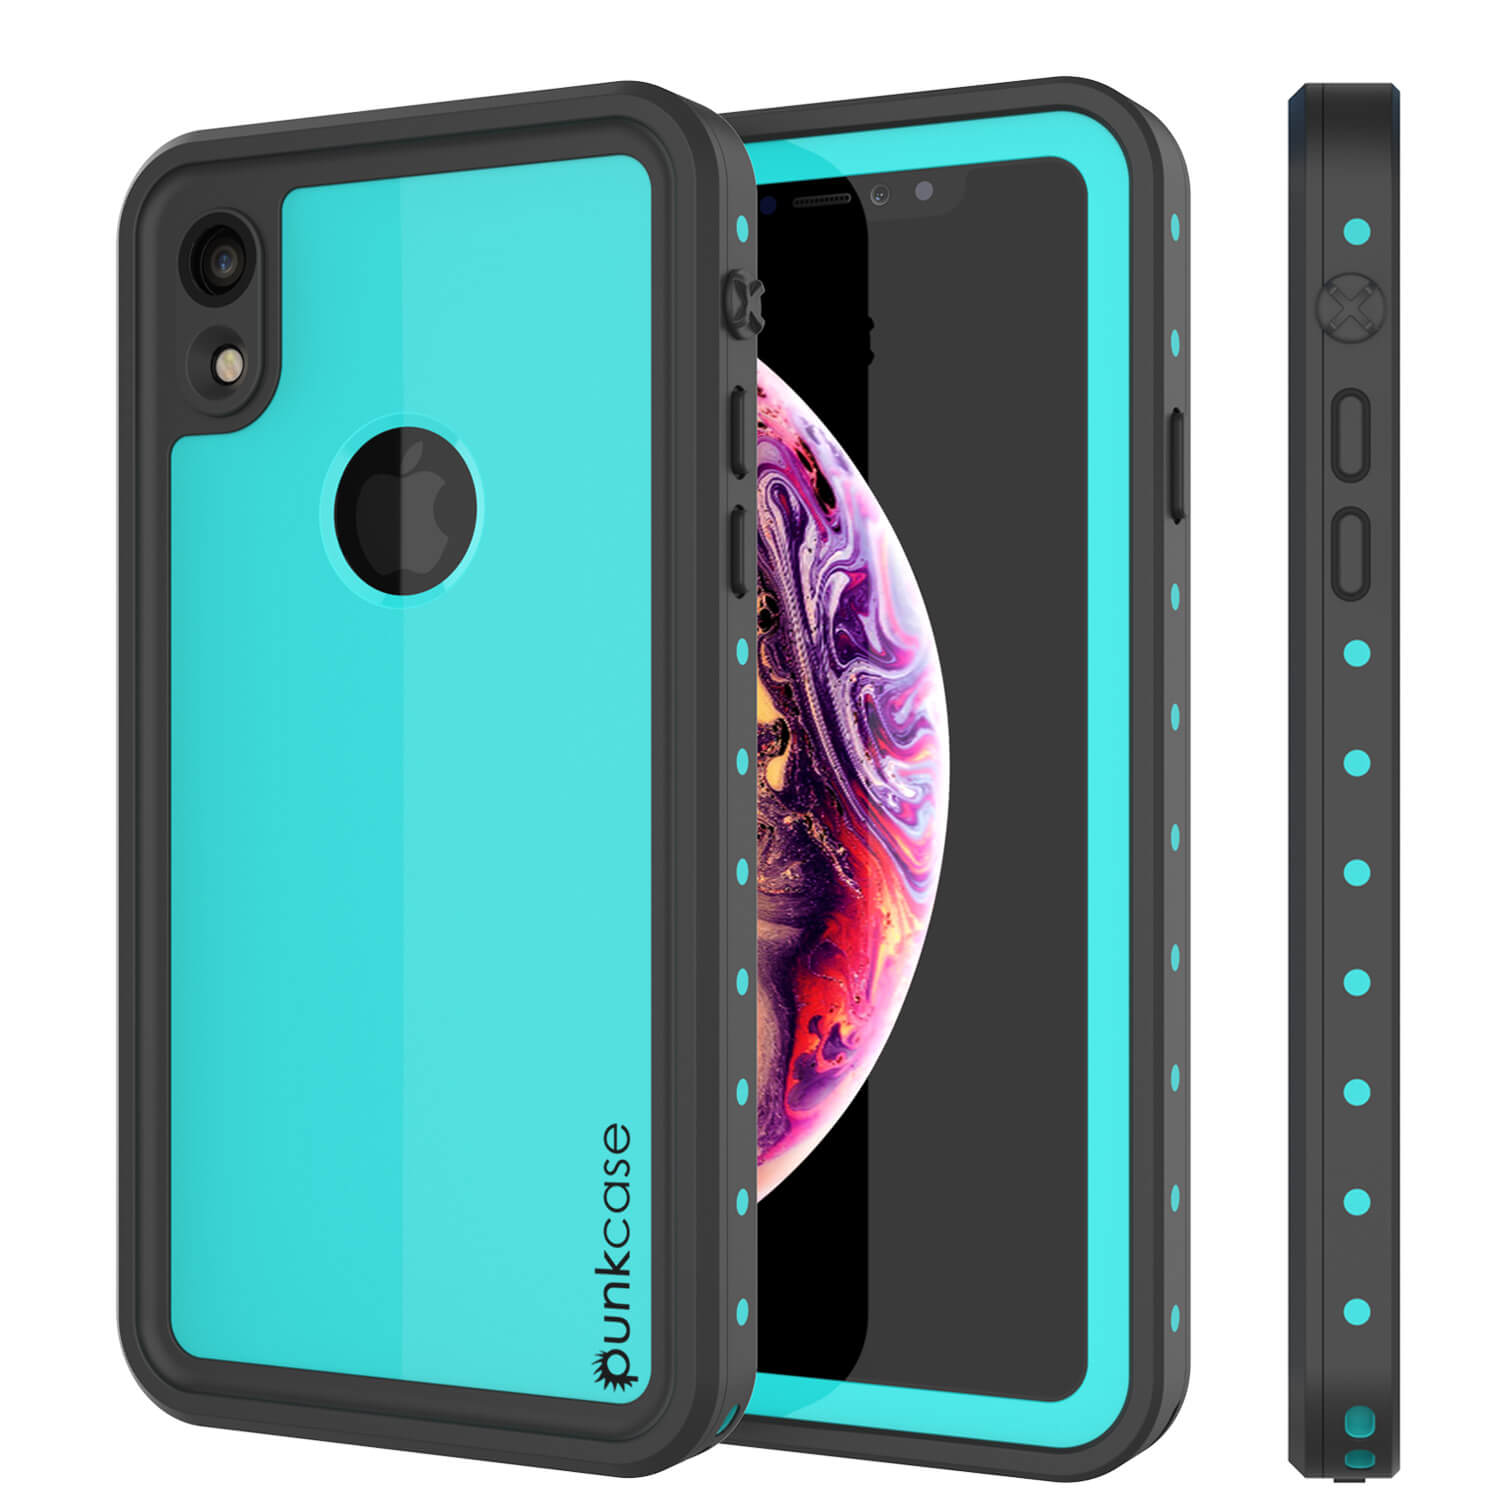 iPhone XR Waterproof IP68 Case, Punkcase [Teal] [StudStar Series] [Slim Fit] (Color in image: teal)